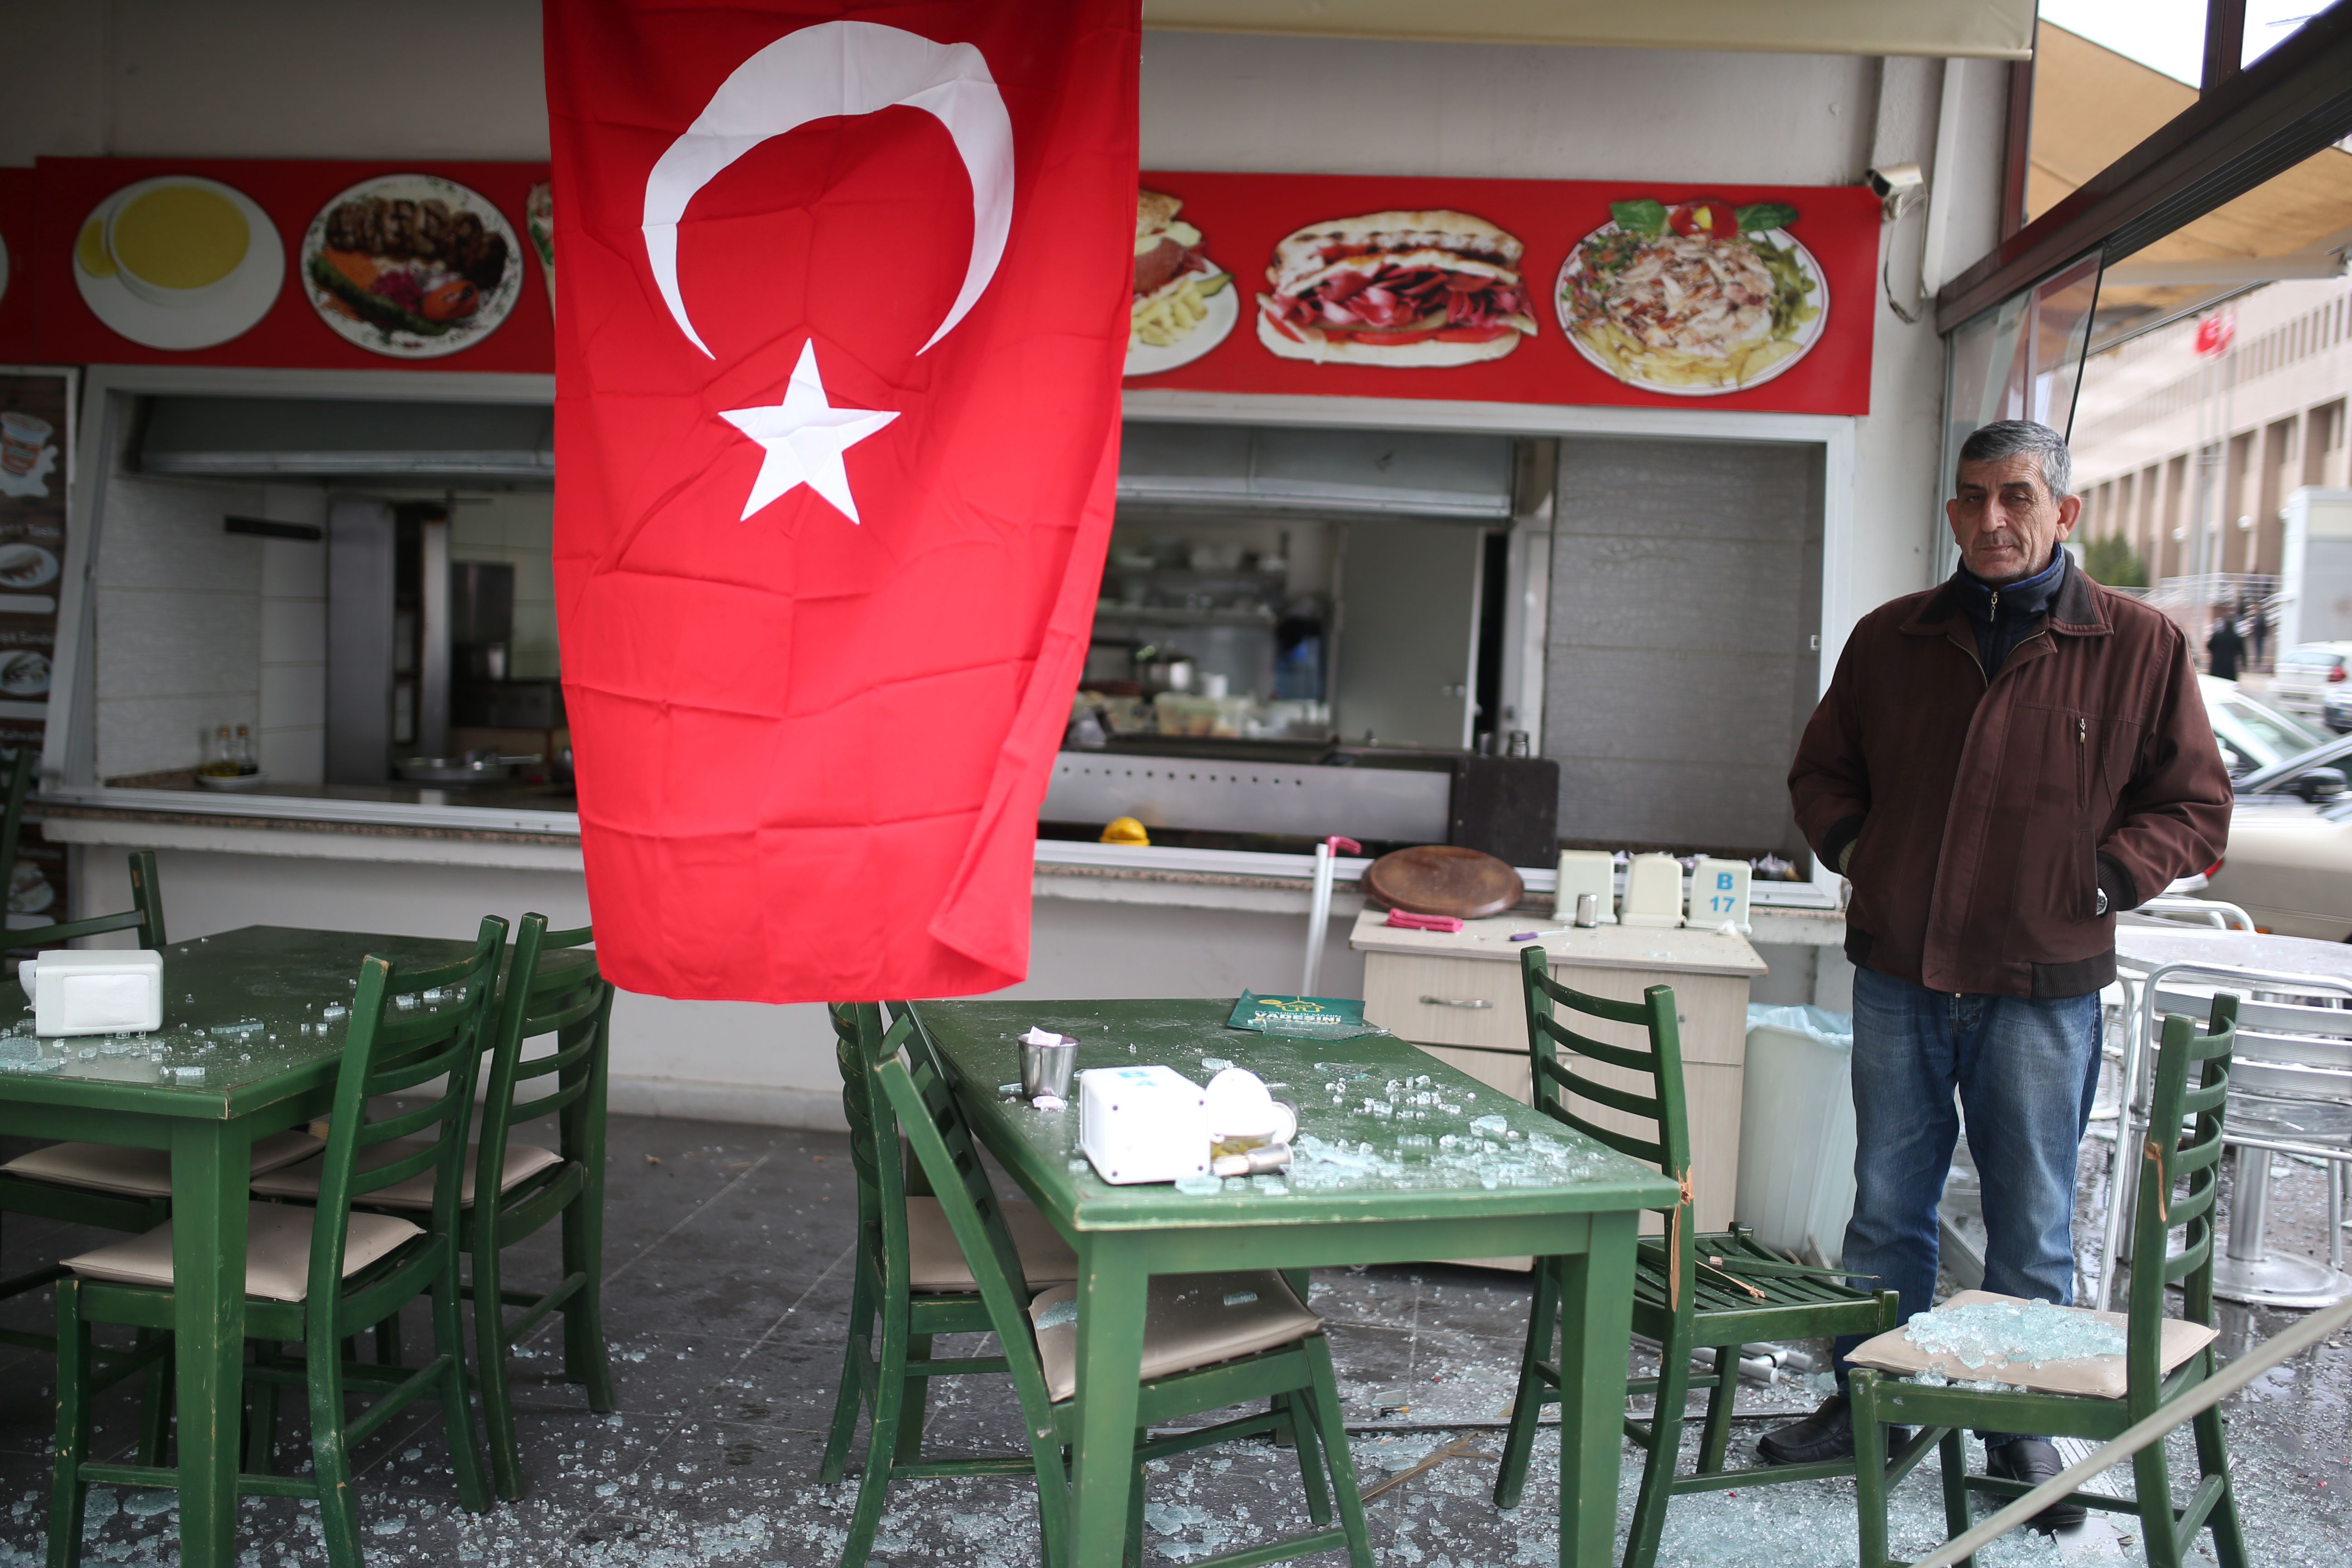 أثار تحطم الزجاج بأحد المطاعم فى محيط الإنفجار بإزمير التركية